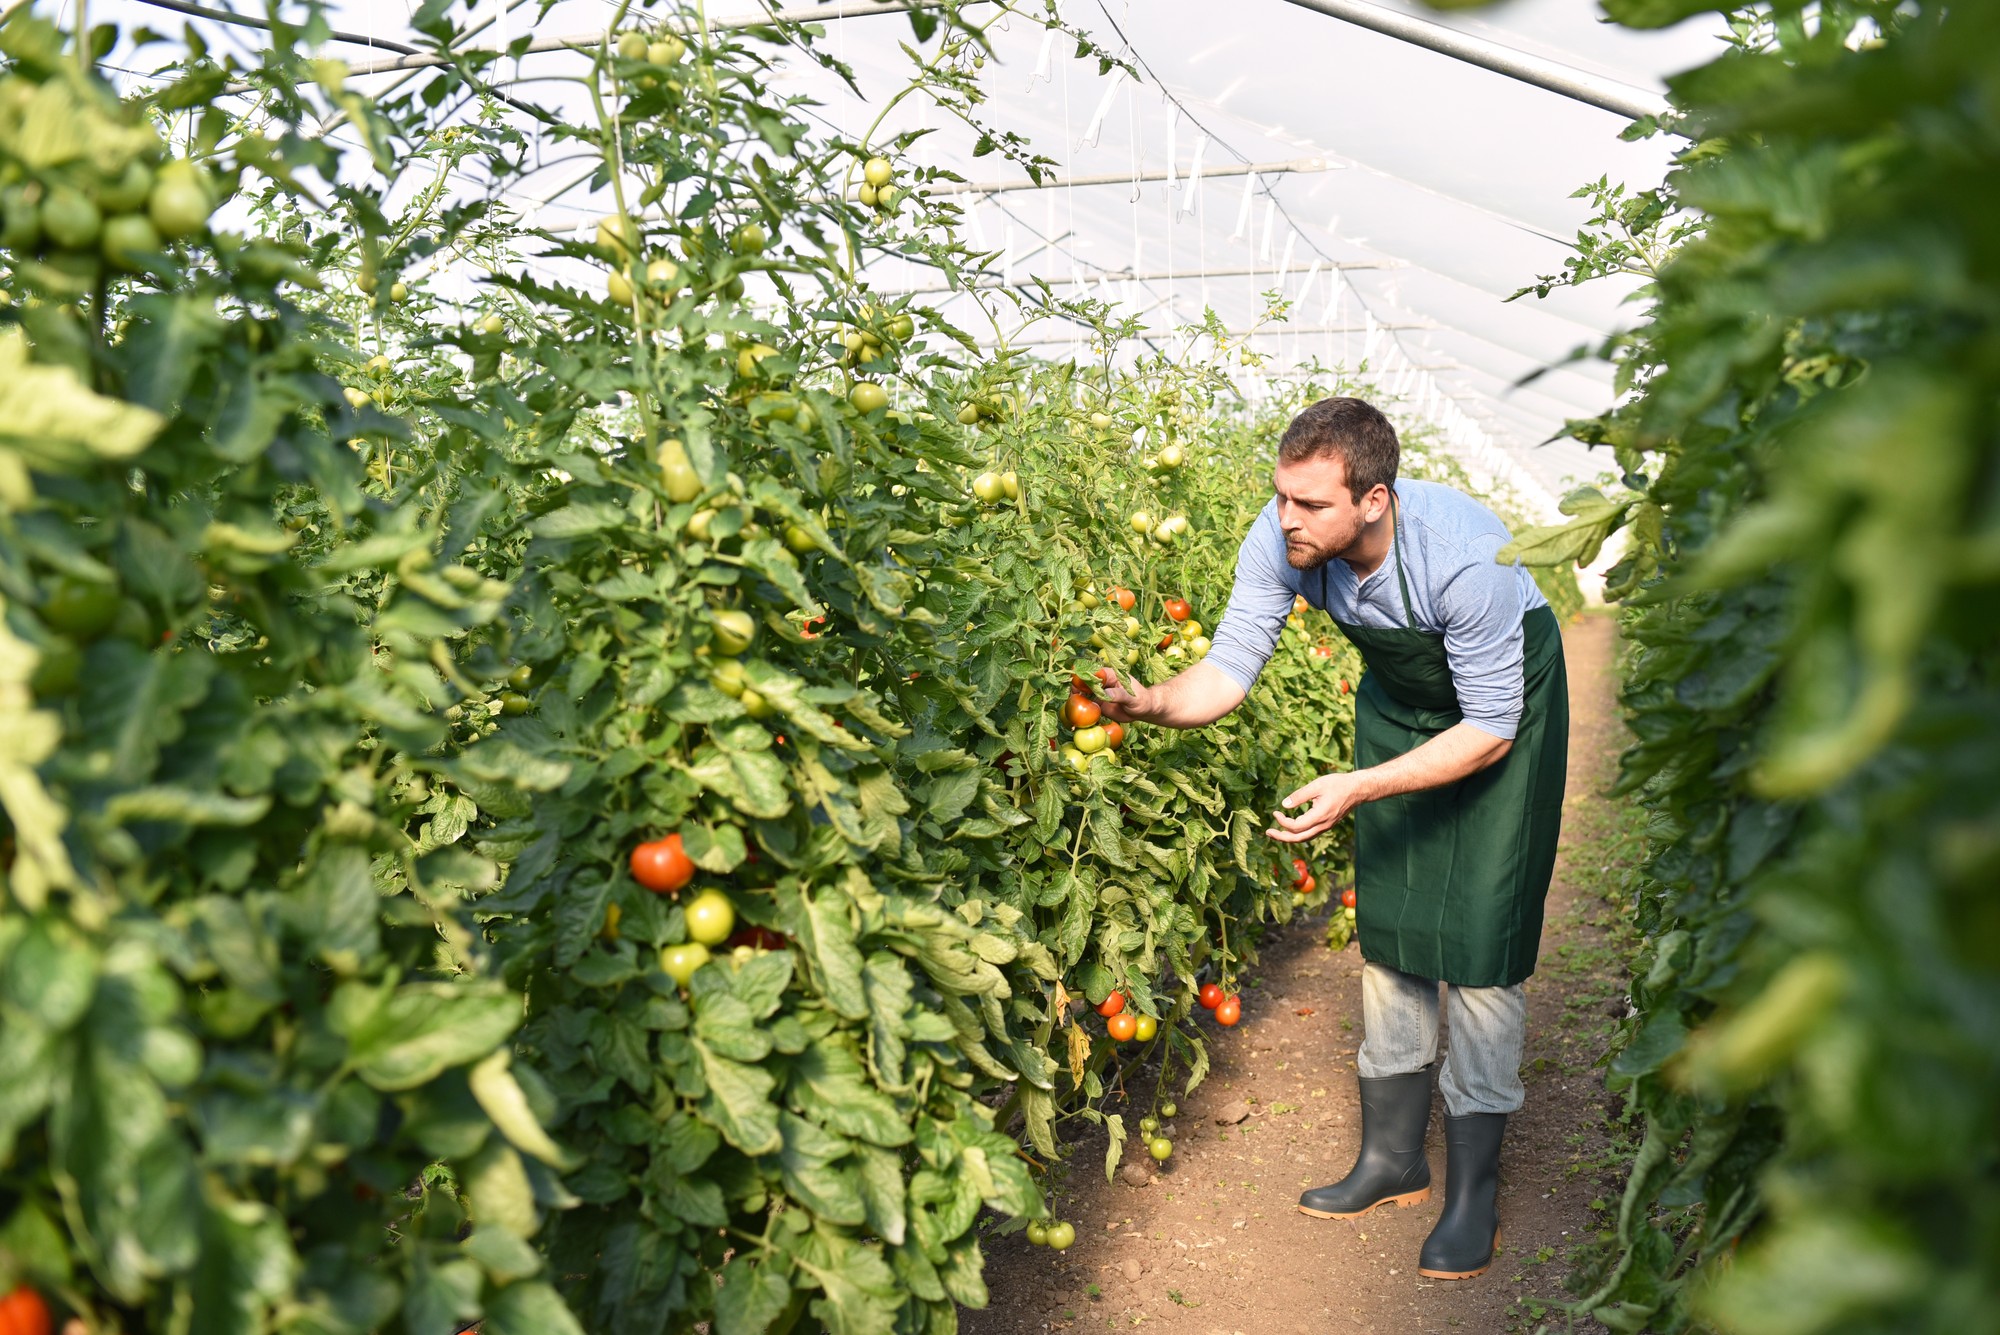 Gärtner arbeitet in einem Treibhaus mit Tomatenpflanzen // Gardener works in a greenhouse with tomato plants